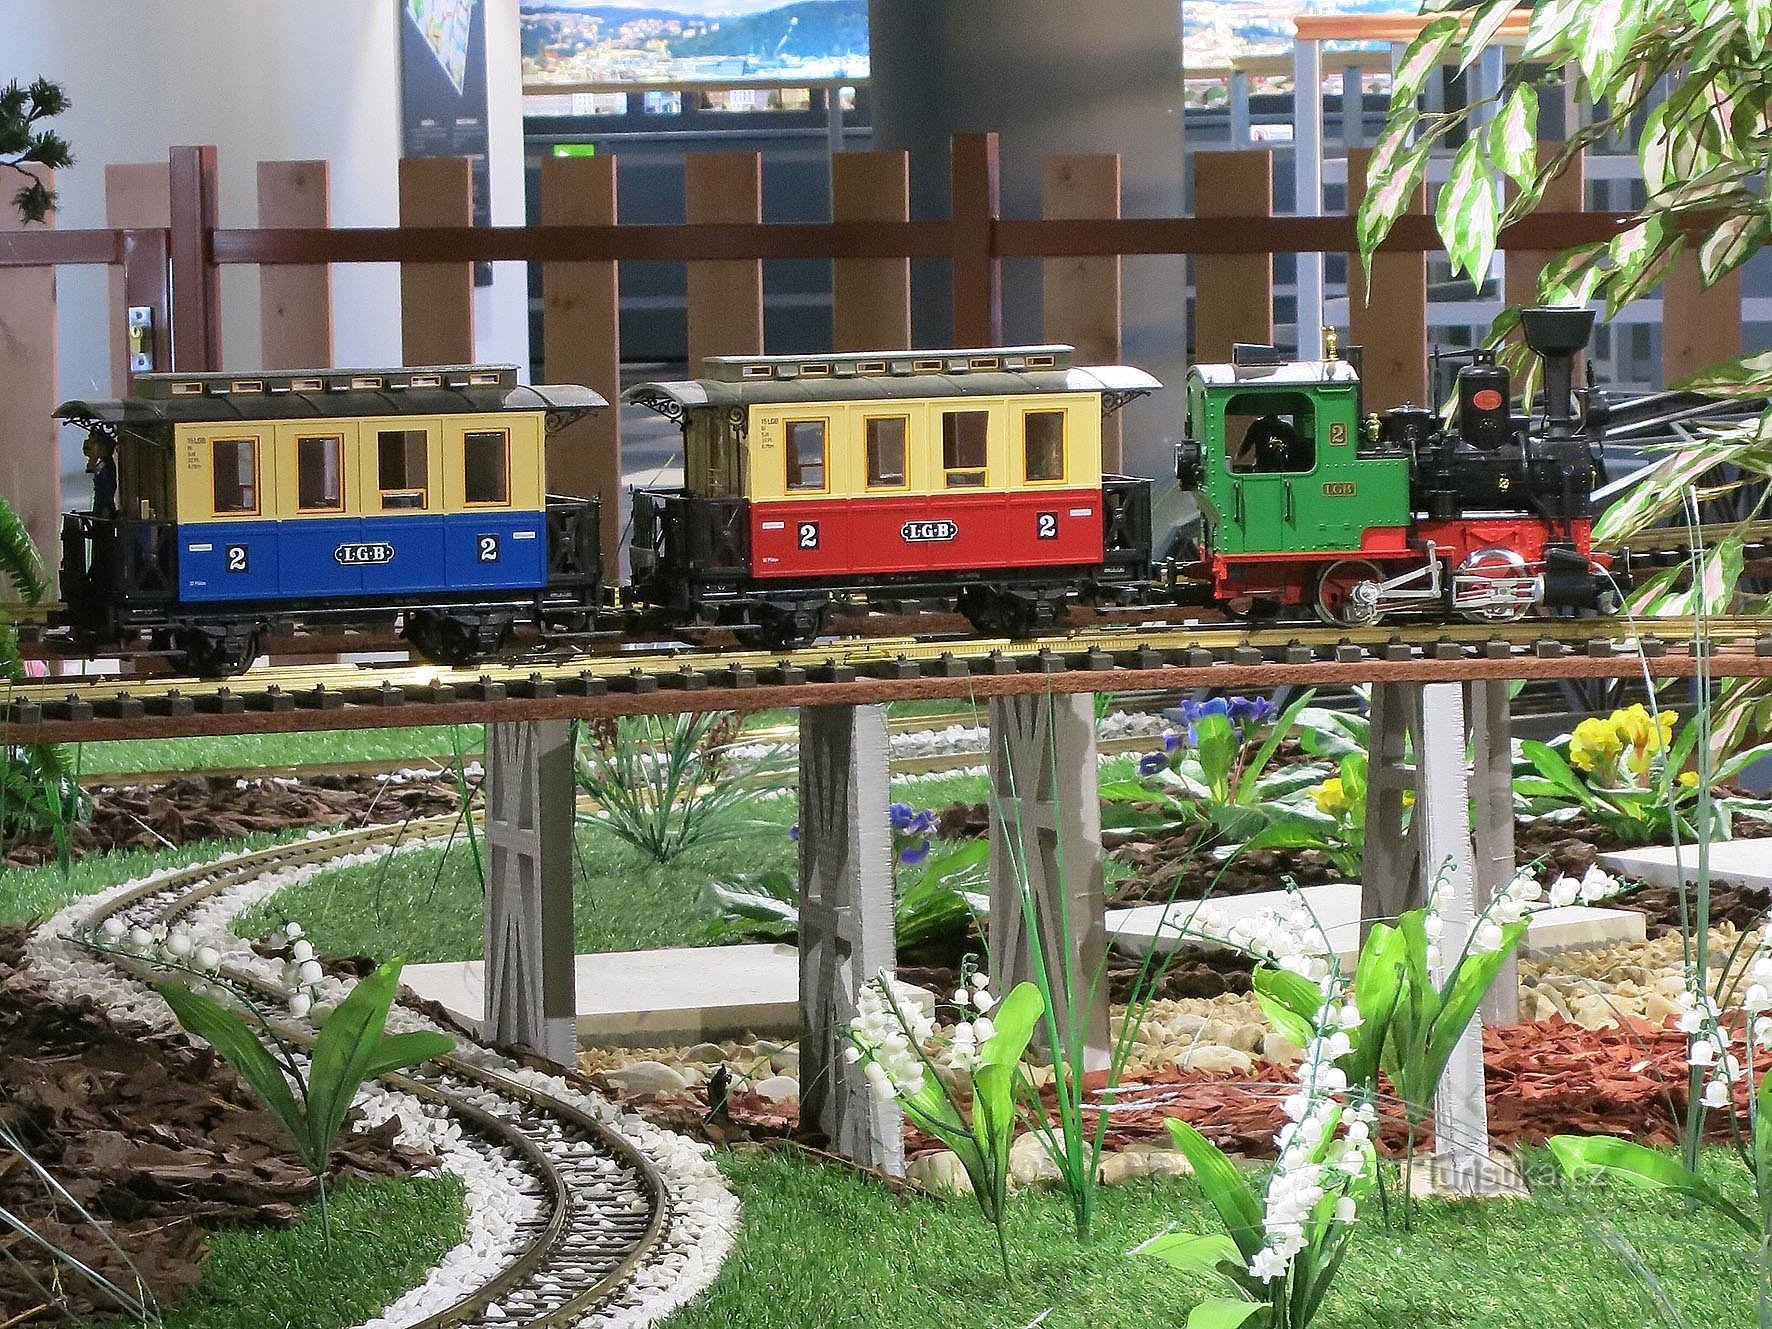 Hiša vlakov in muzej železniških modelov